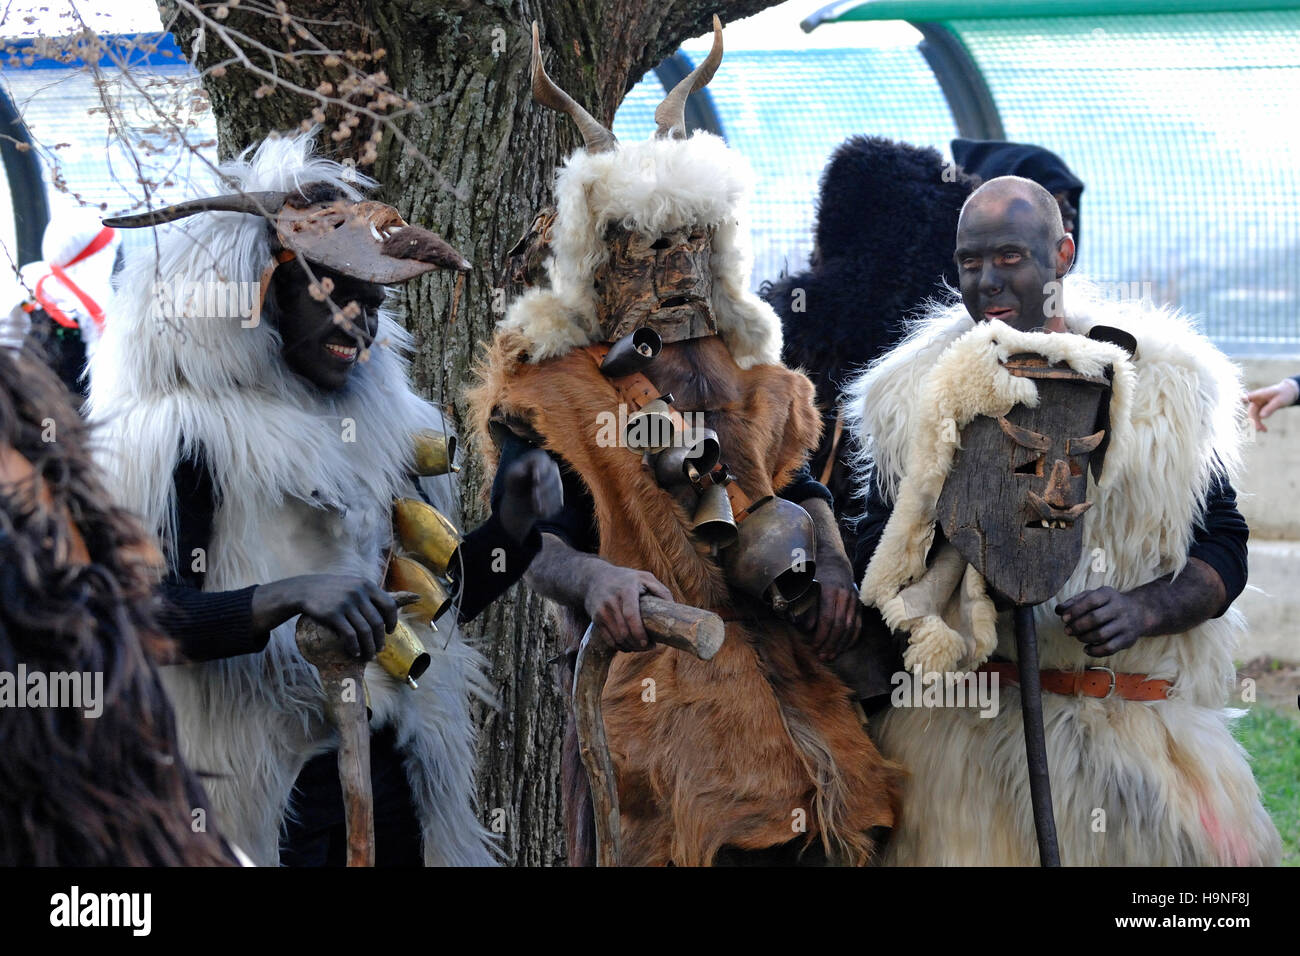 Maschera tradizionale della Sardegna, che partecipa alla sfilata al carnevale di Laconi, Sardegna, Italia Foto Stock